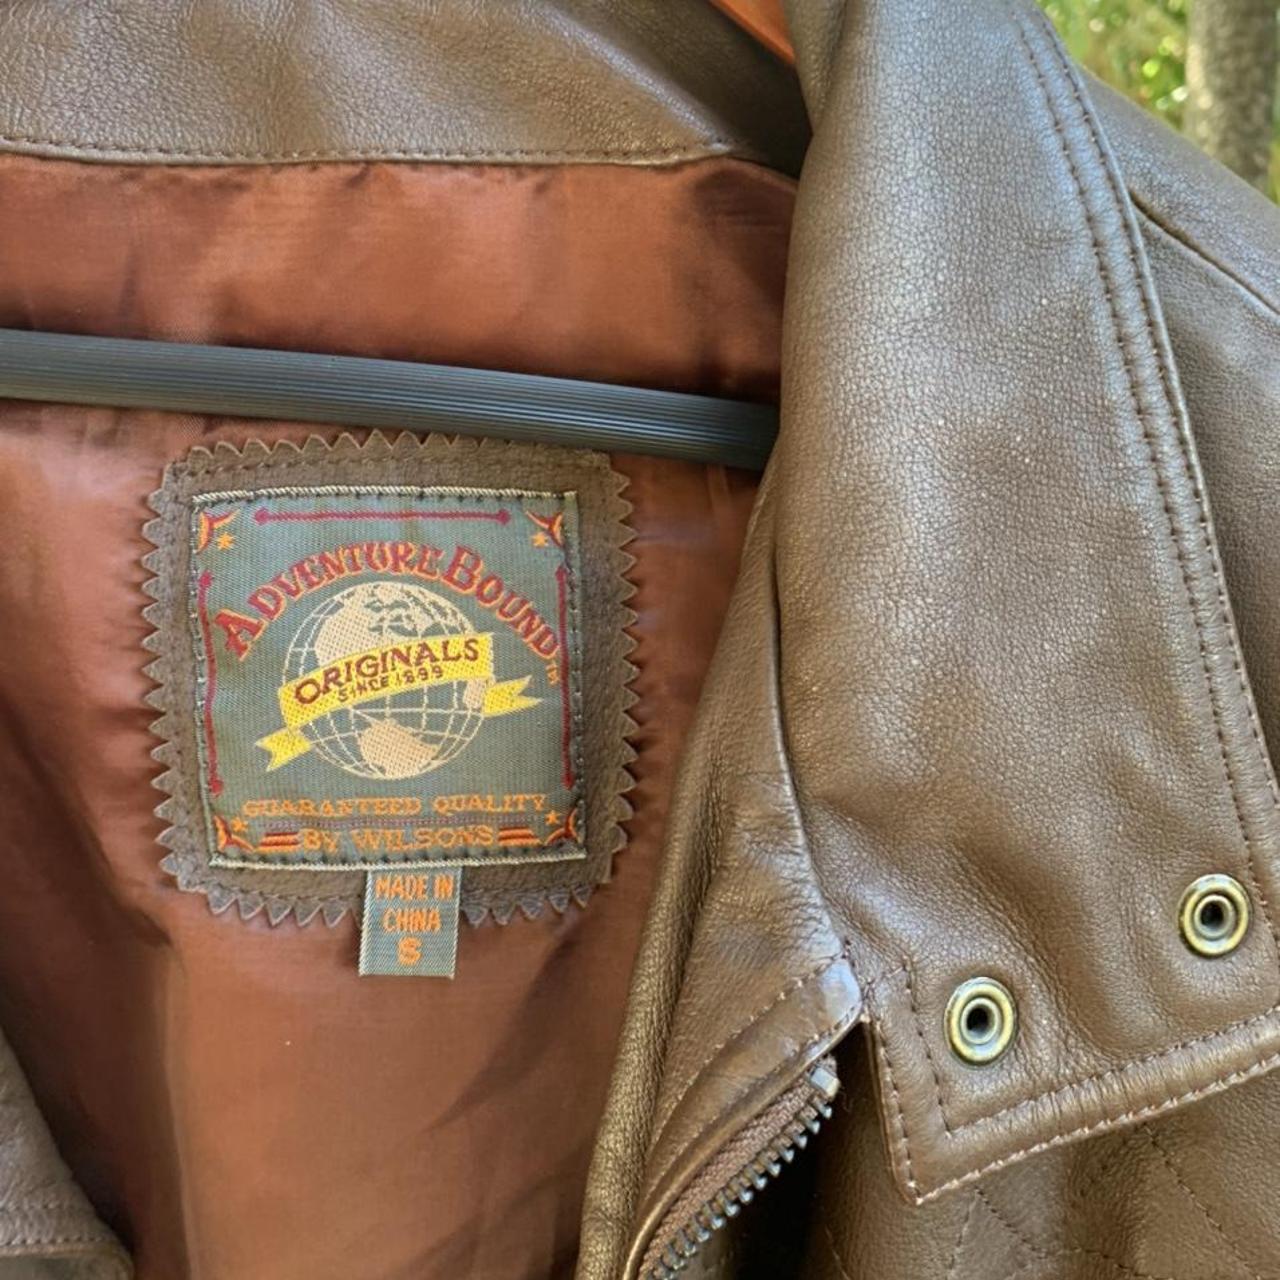 Adventure Bound Originals Brown Leather Jacket Size... - Depop